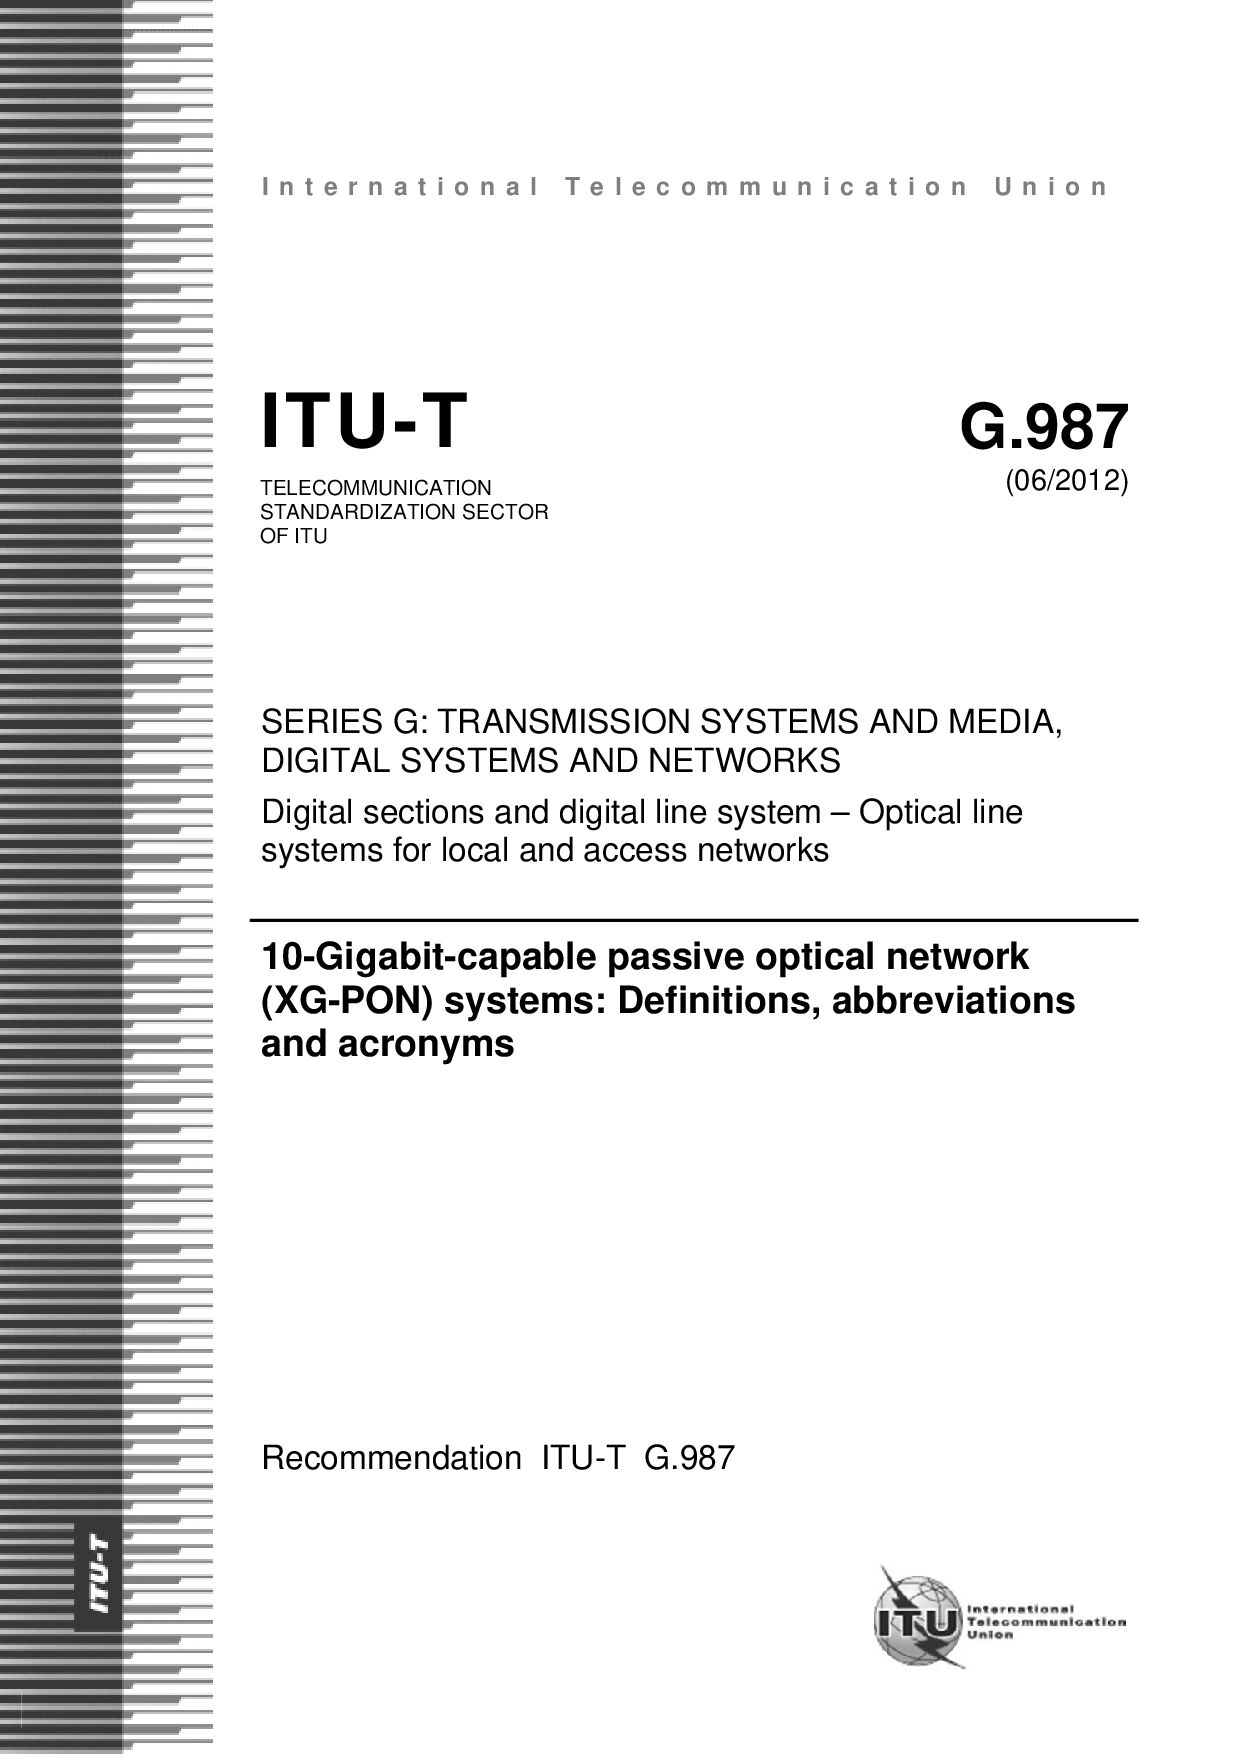 ITU-T G.987-2012